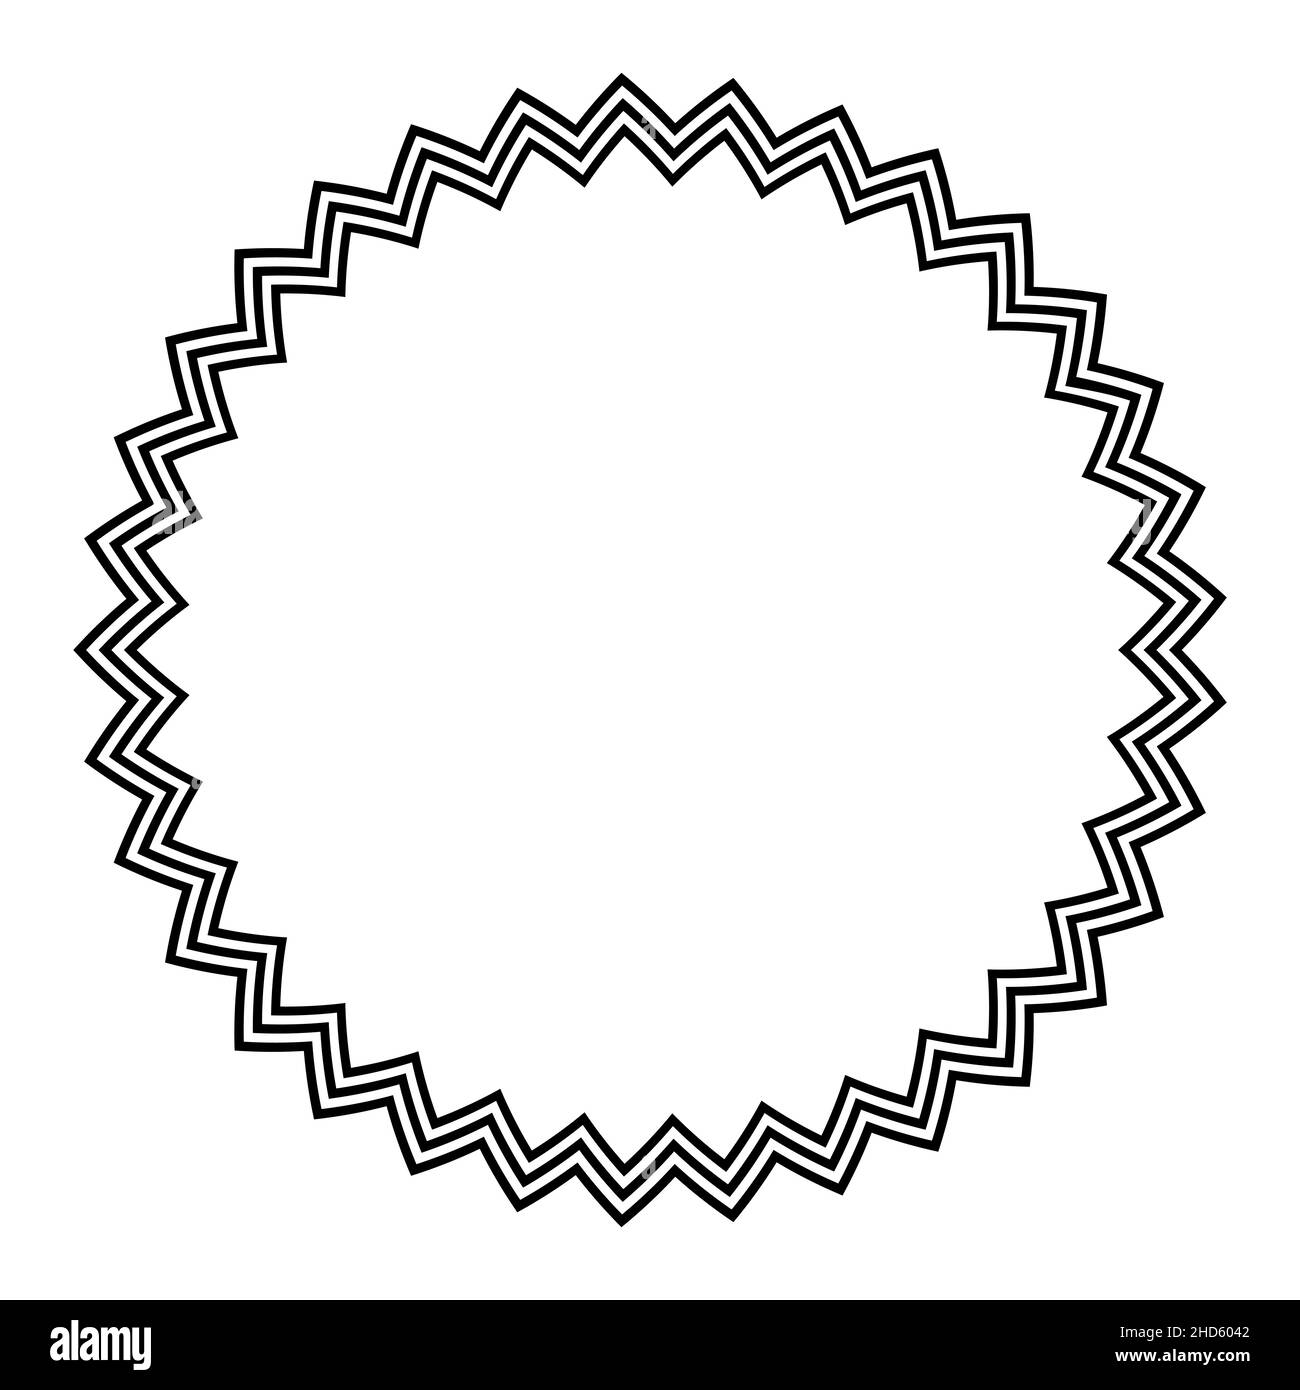 Cadre circulaire avec lignes zigzag horizontales.Trois lignes dentelées audacieuses formant une étoile à pointes multiples et une bordure décorative. Banque D'Images